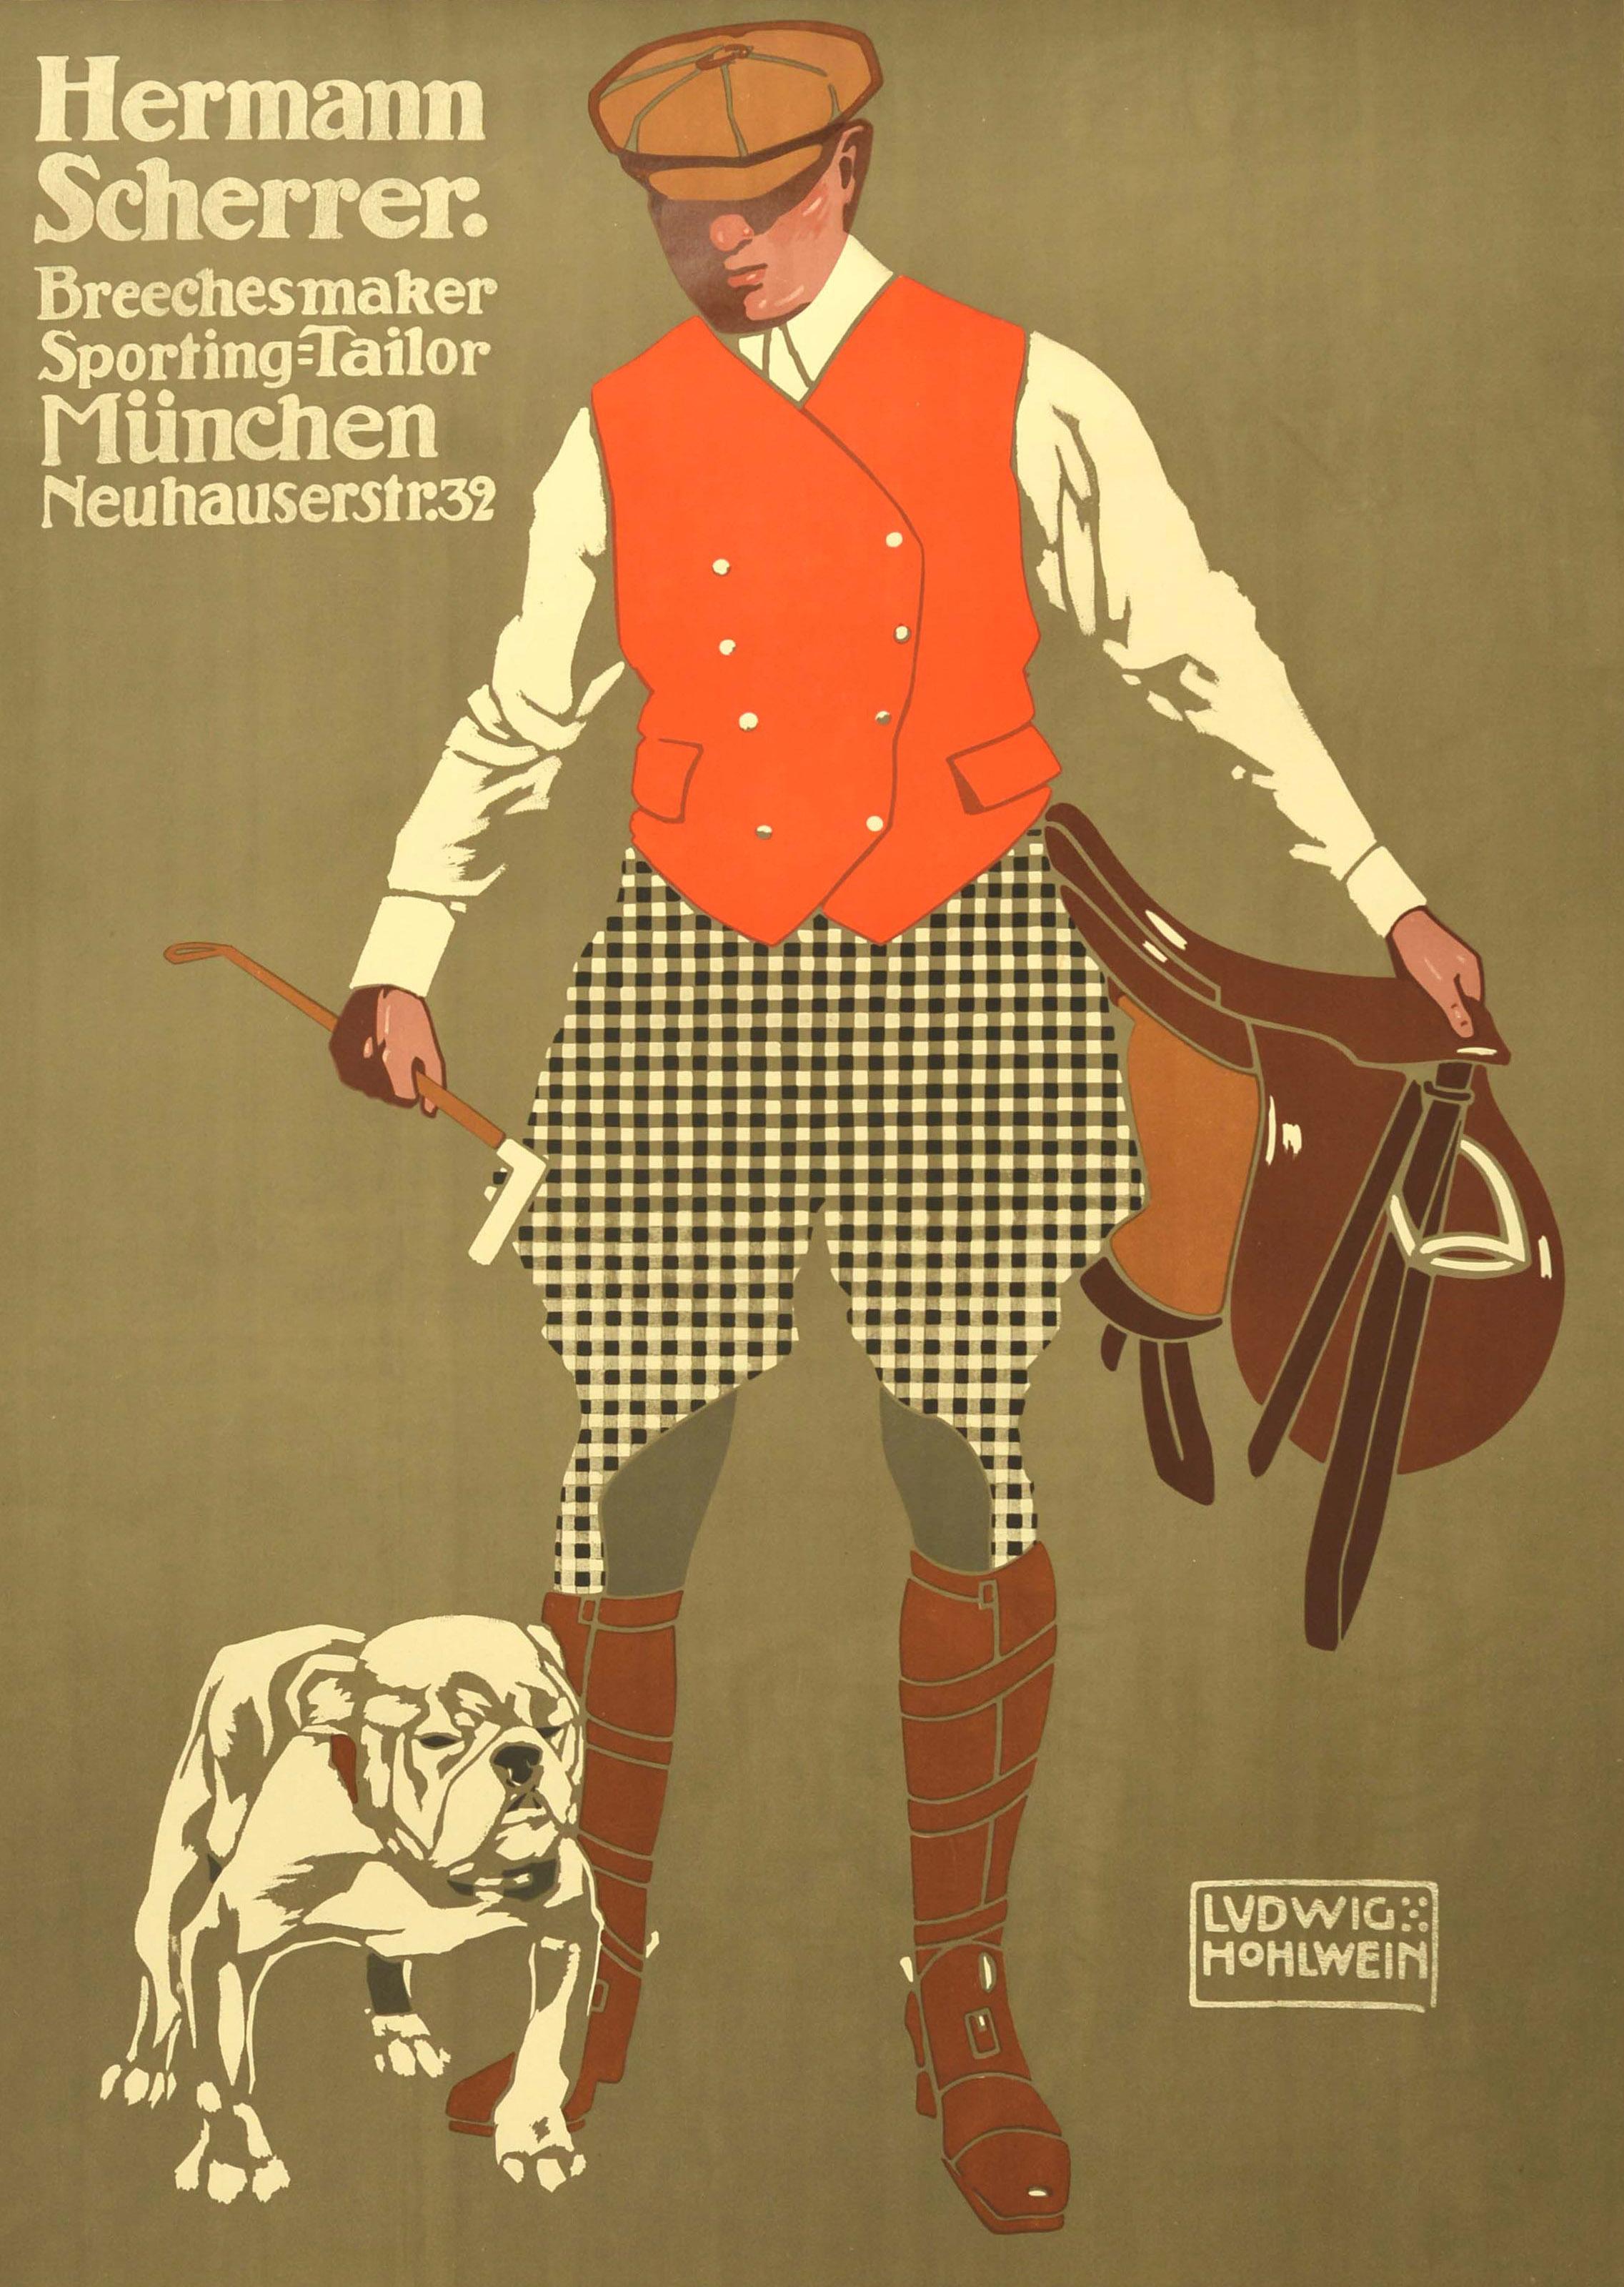 Affiche publicitaire originale et ancienne sur la mode et les vêtements masculins pour Hermann Scherrer Breeches maker Sporting Tailor Munchen Neuhauser Strasse 32. Grande œuvre d'art du célèbre graphiste allemand Ludwig Hohlwein (1874-1949)